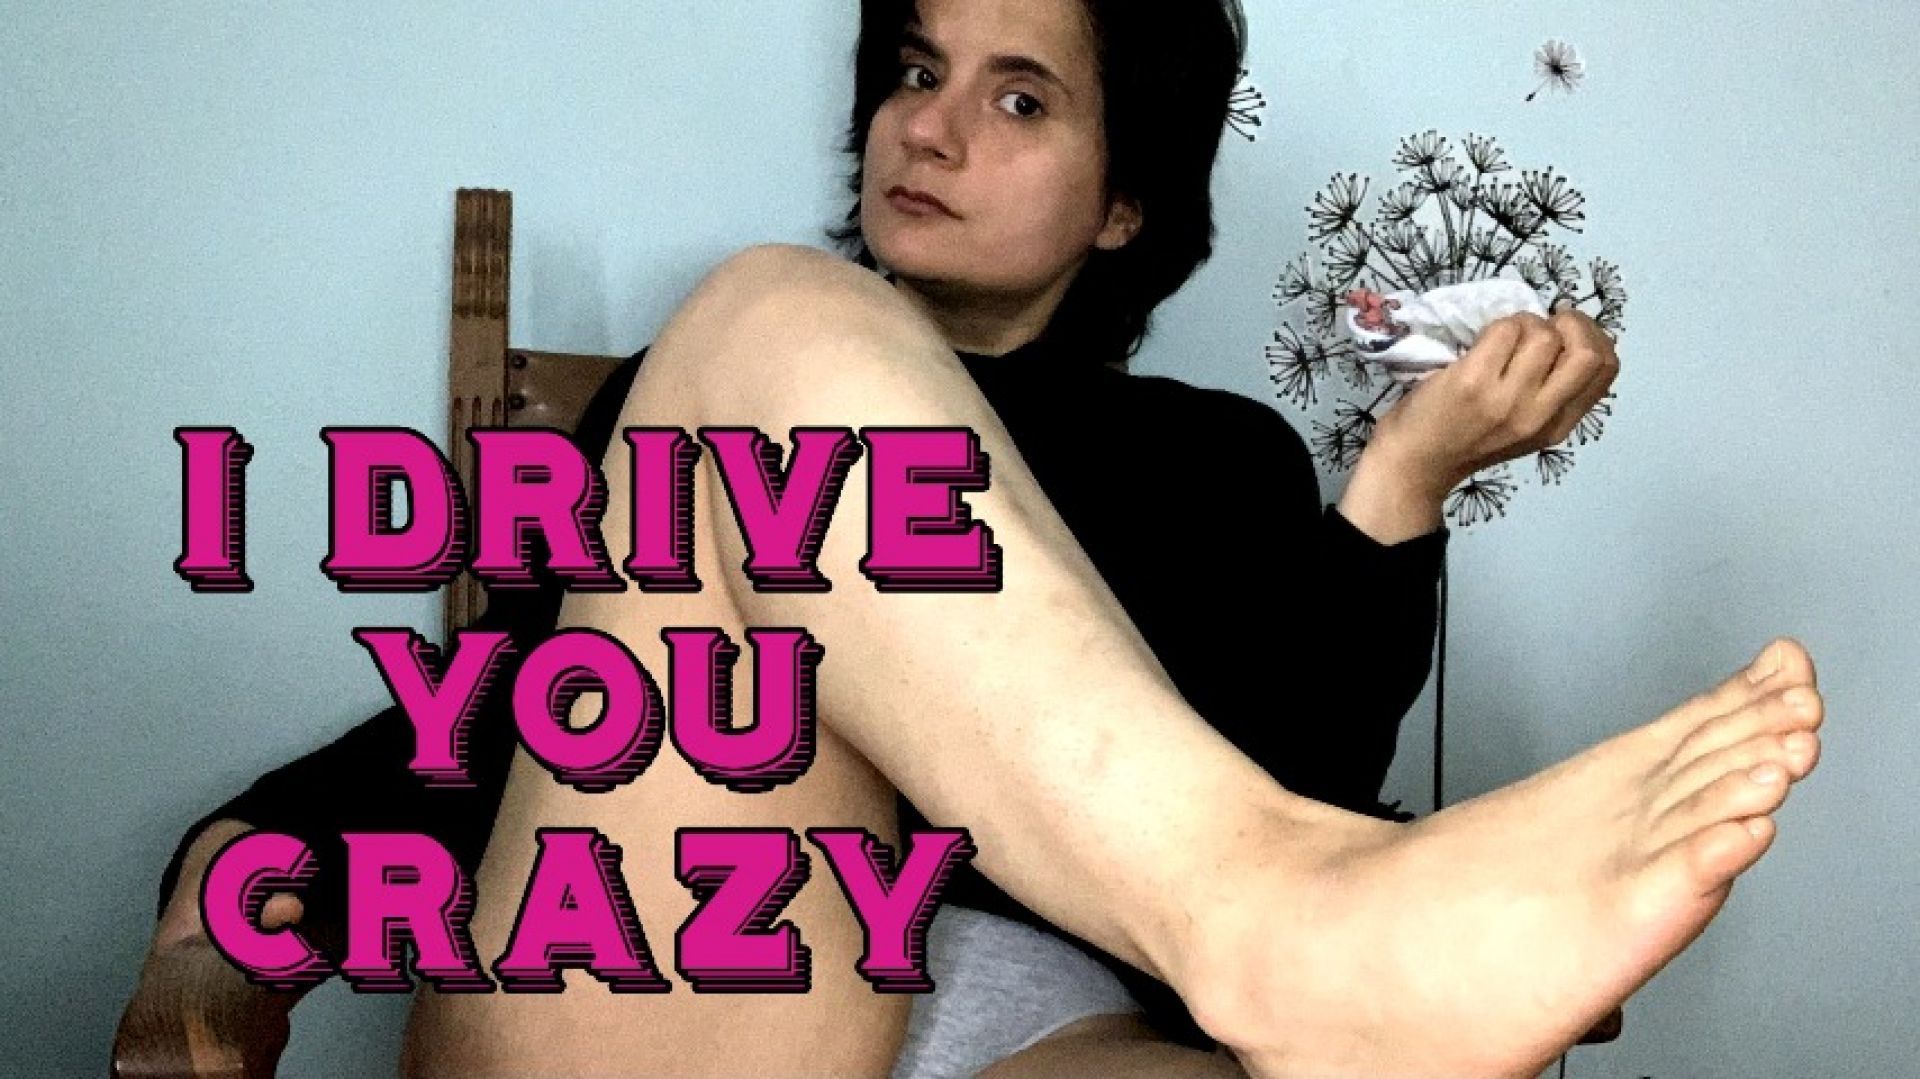 I'll drive you crazy